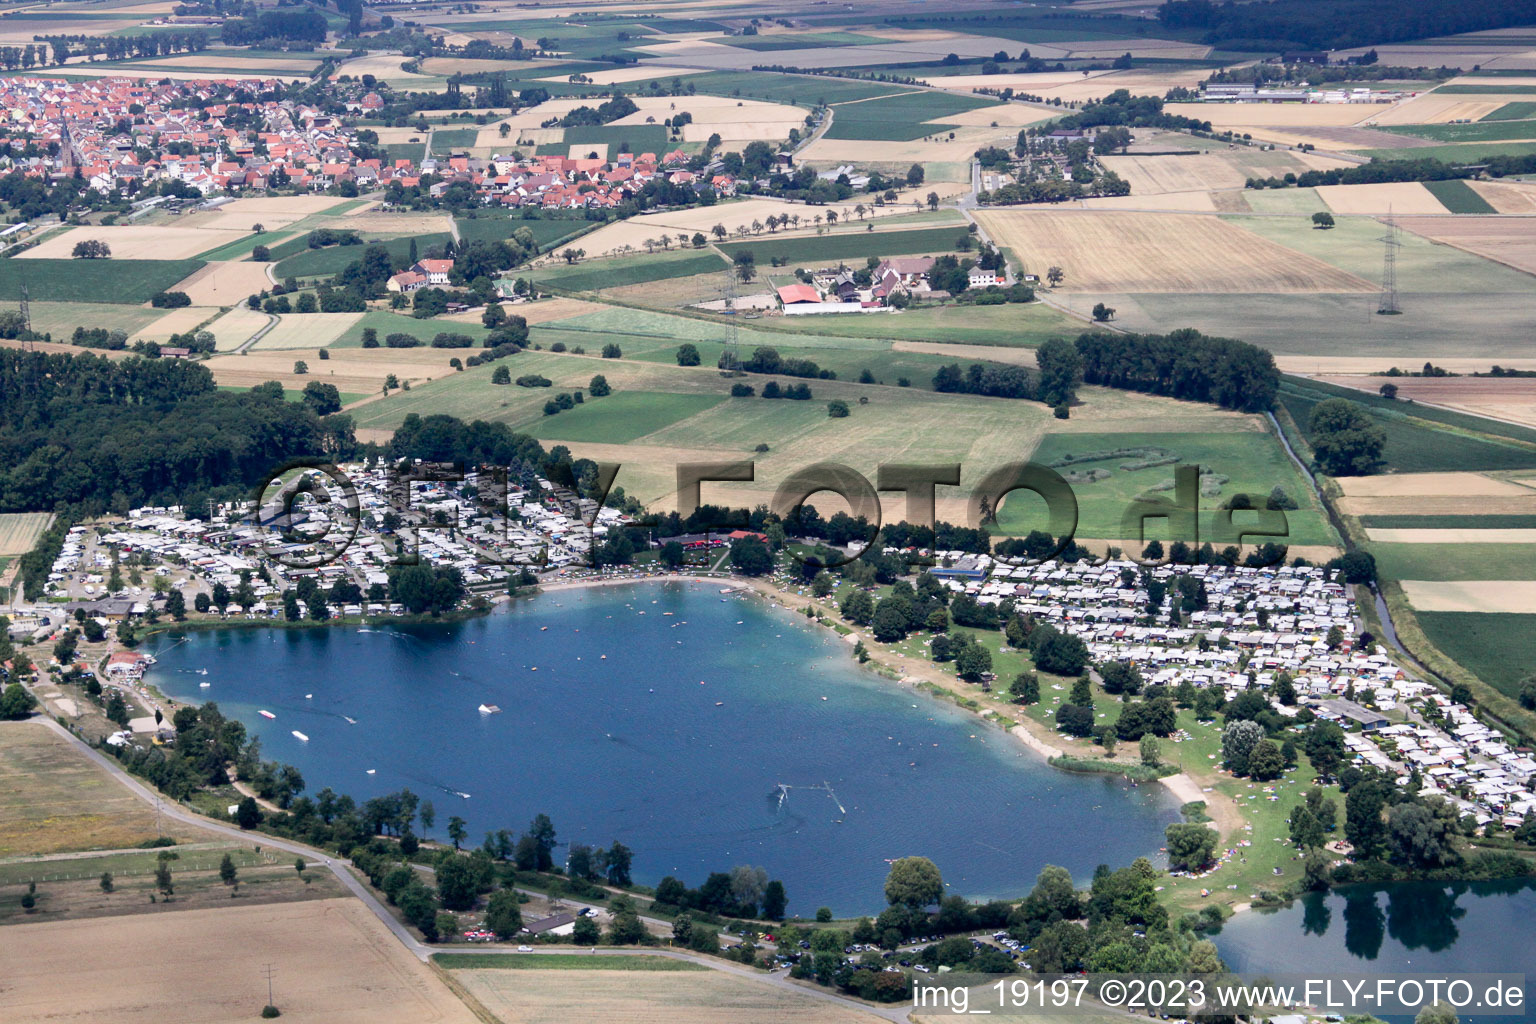 Vue aérienne de Lac de surf de Saint Léoner à le quartier Sankt Leon in St. Leon-Rot dans le département Bade-Wurtemberg, Allemagne